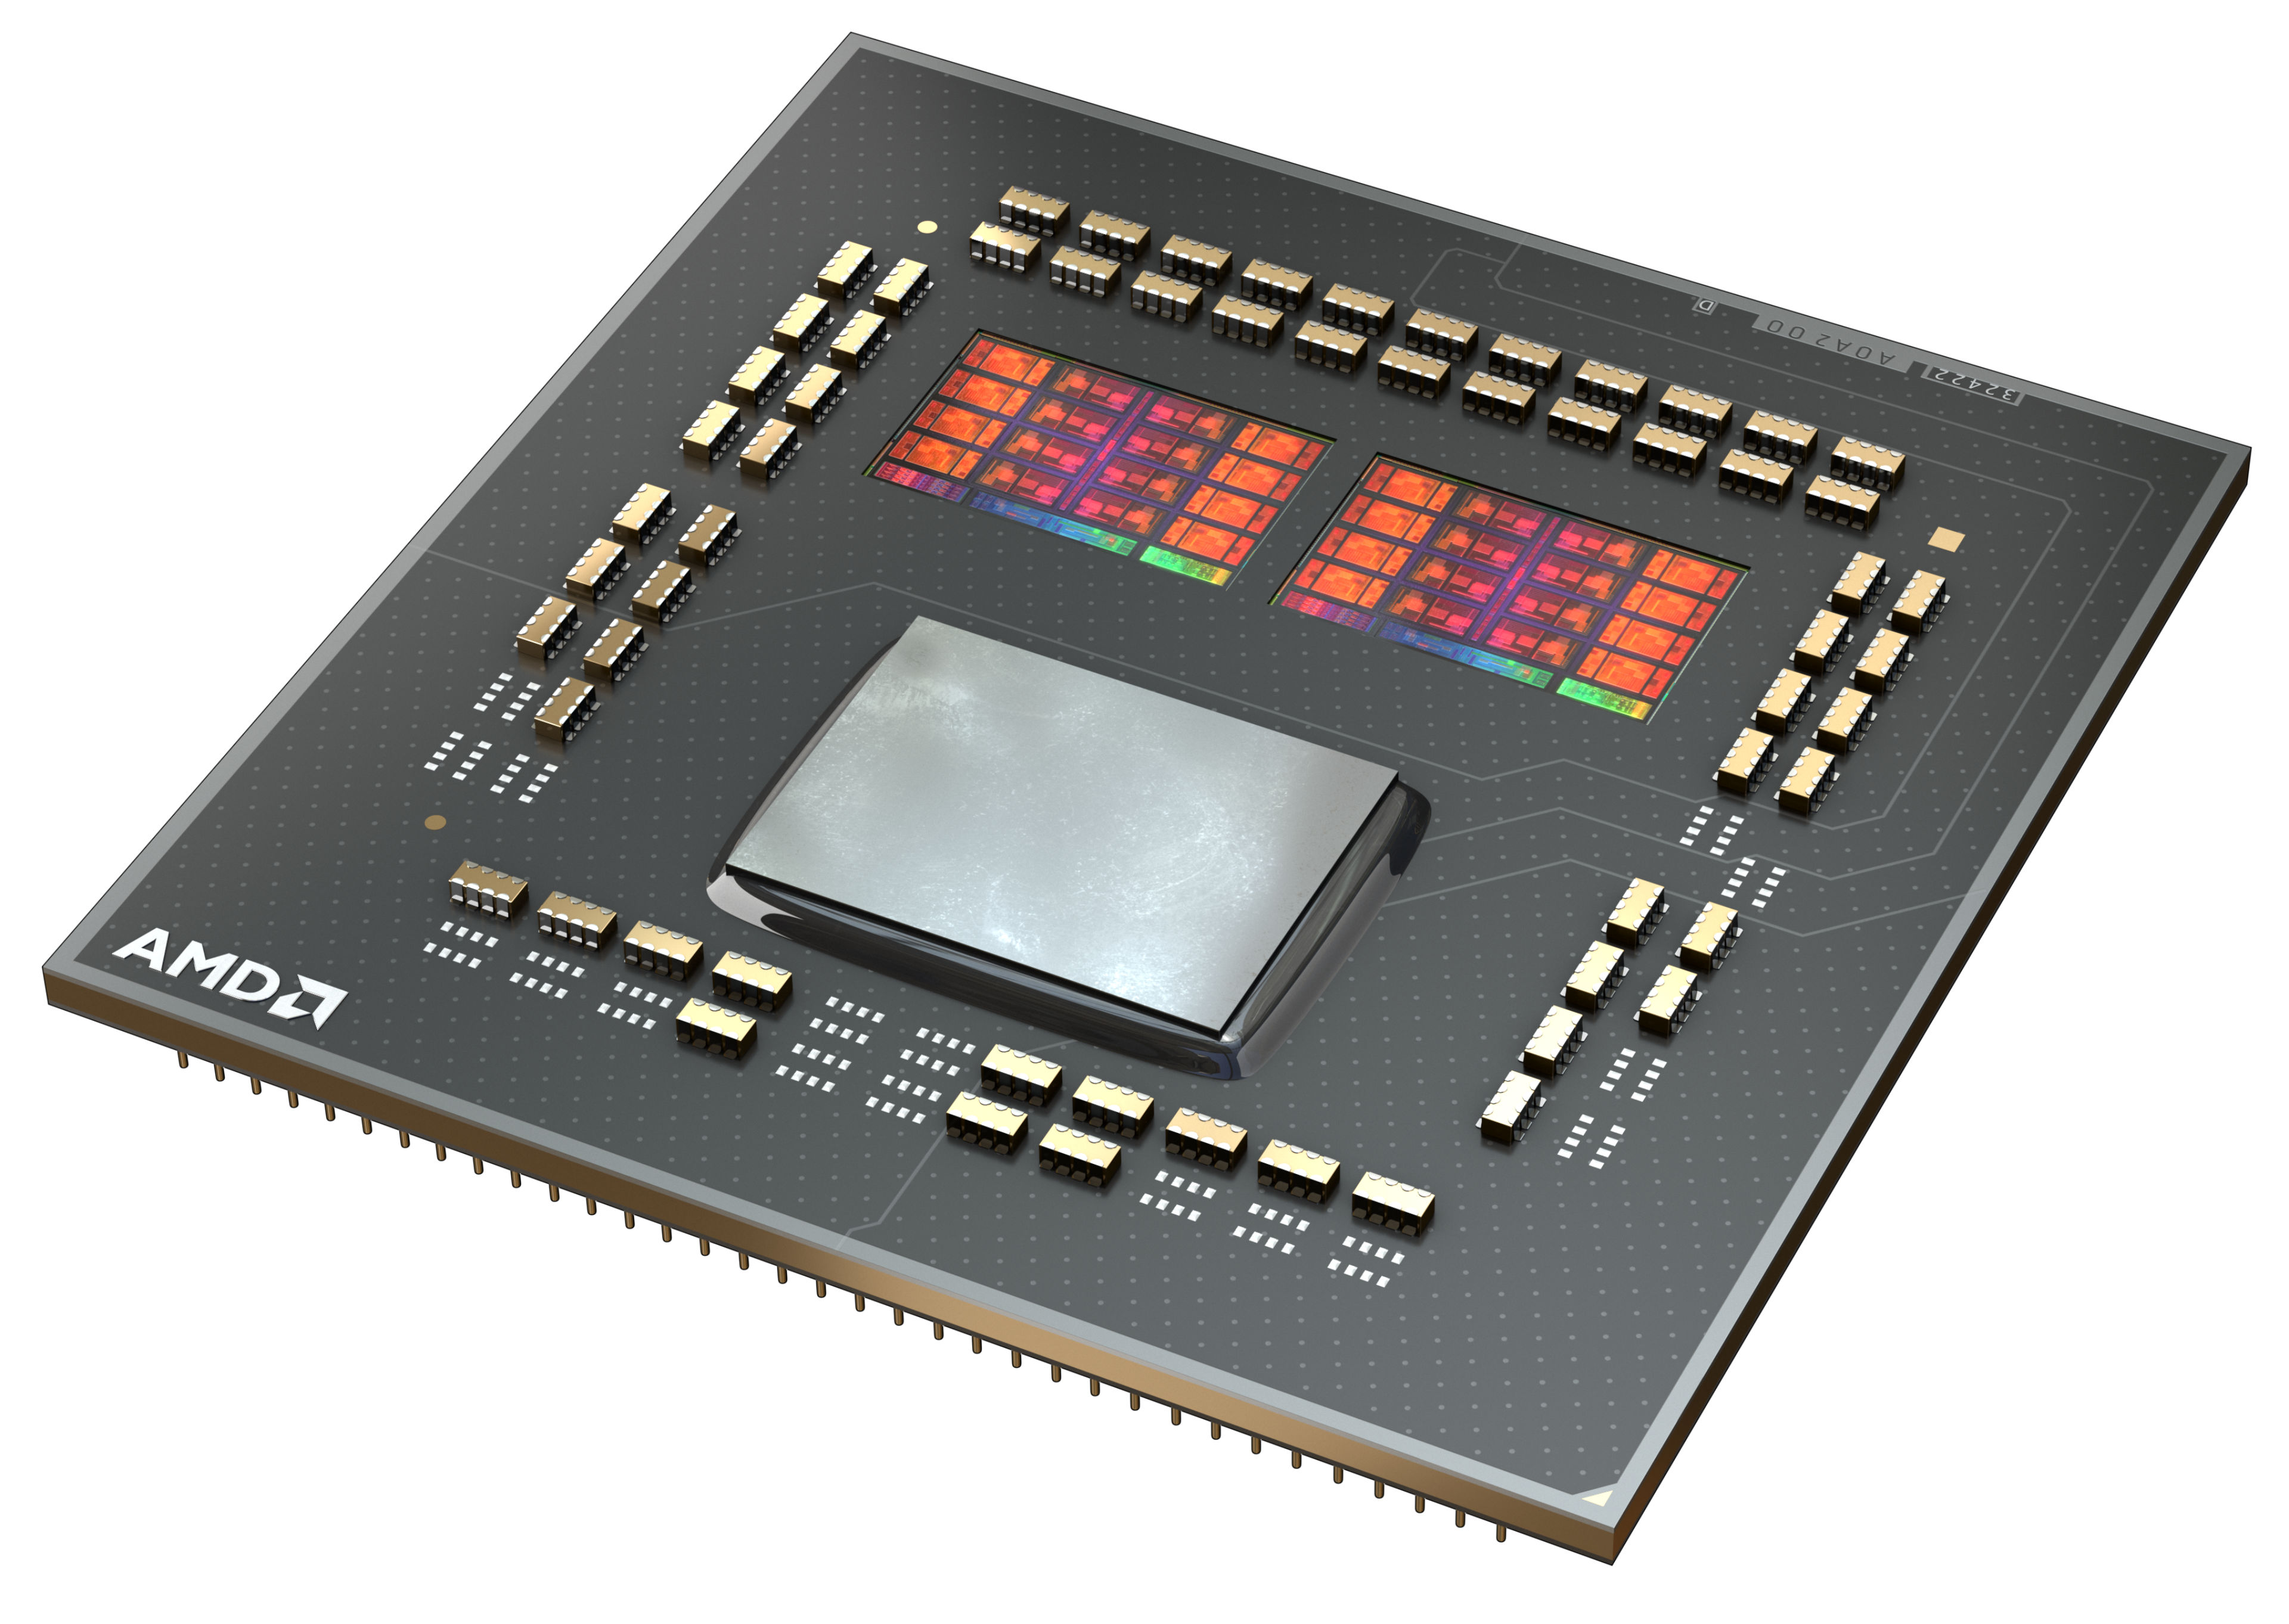 AMD Ryzen 5 5600 - Ryzen 5 5000 Series Vermeer (Zen 3) 6-Core 3.5